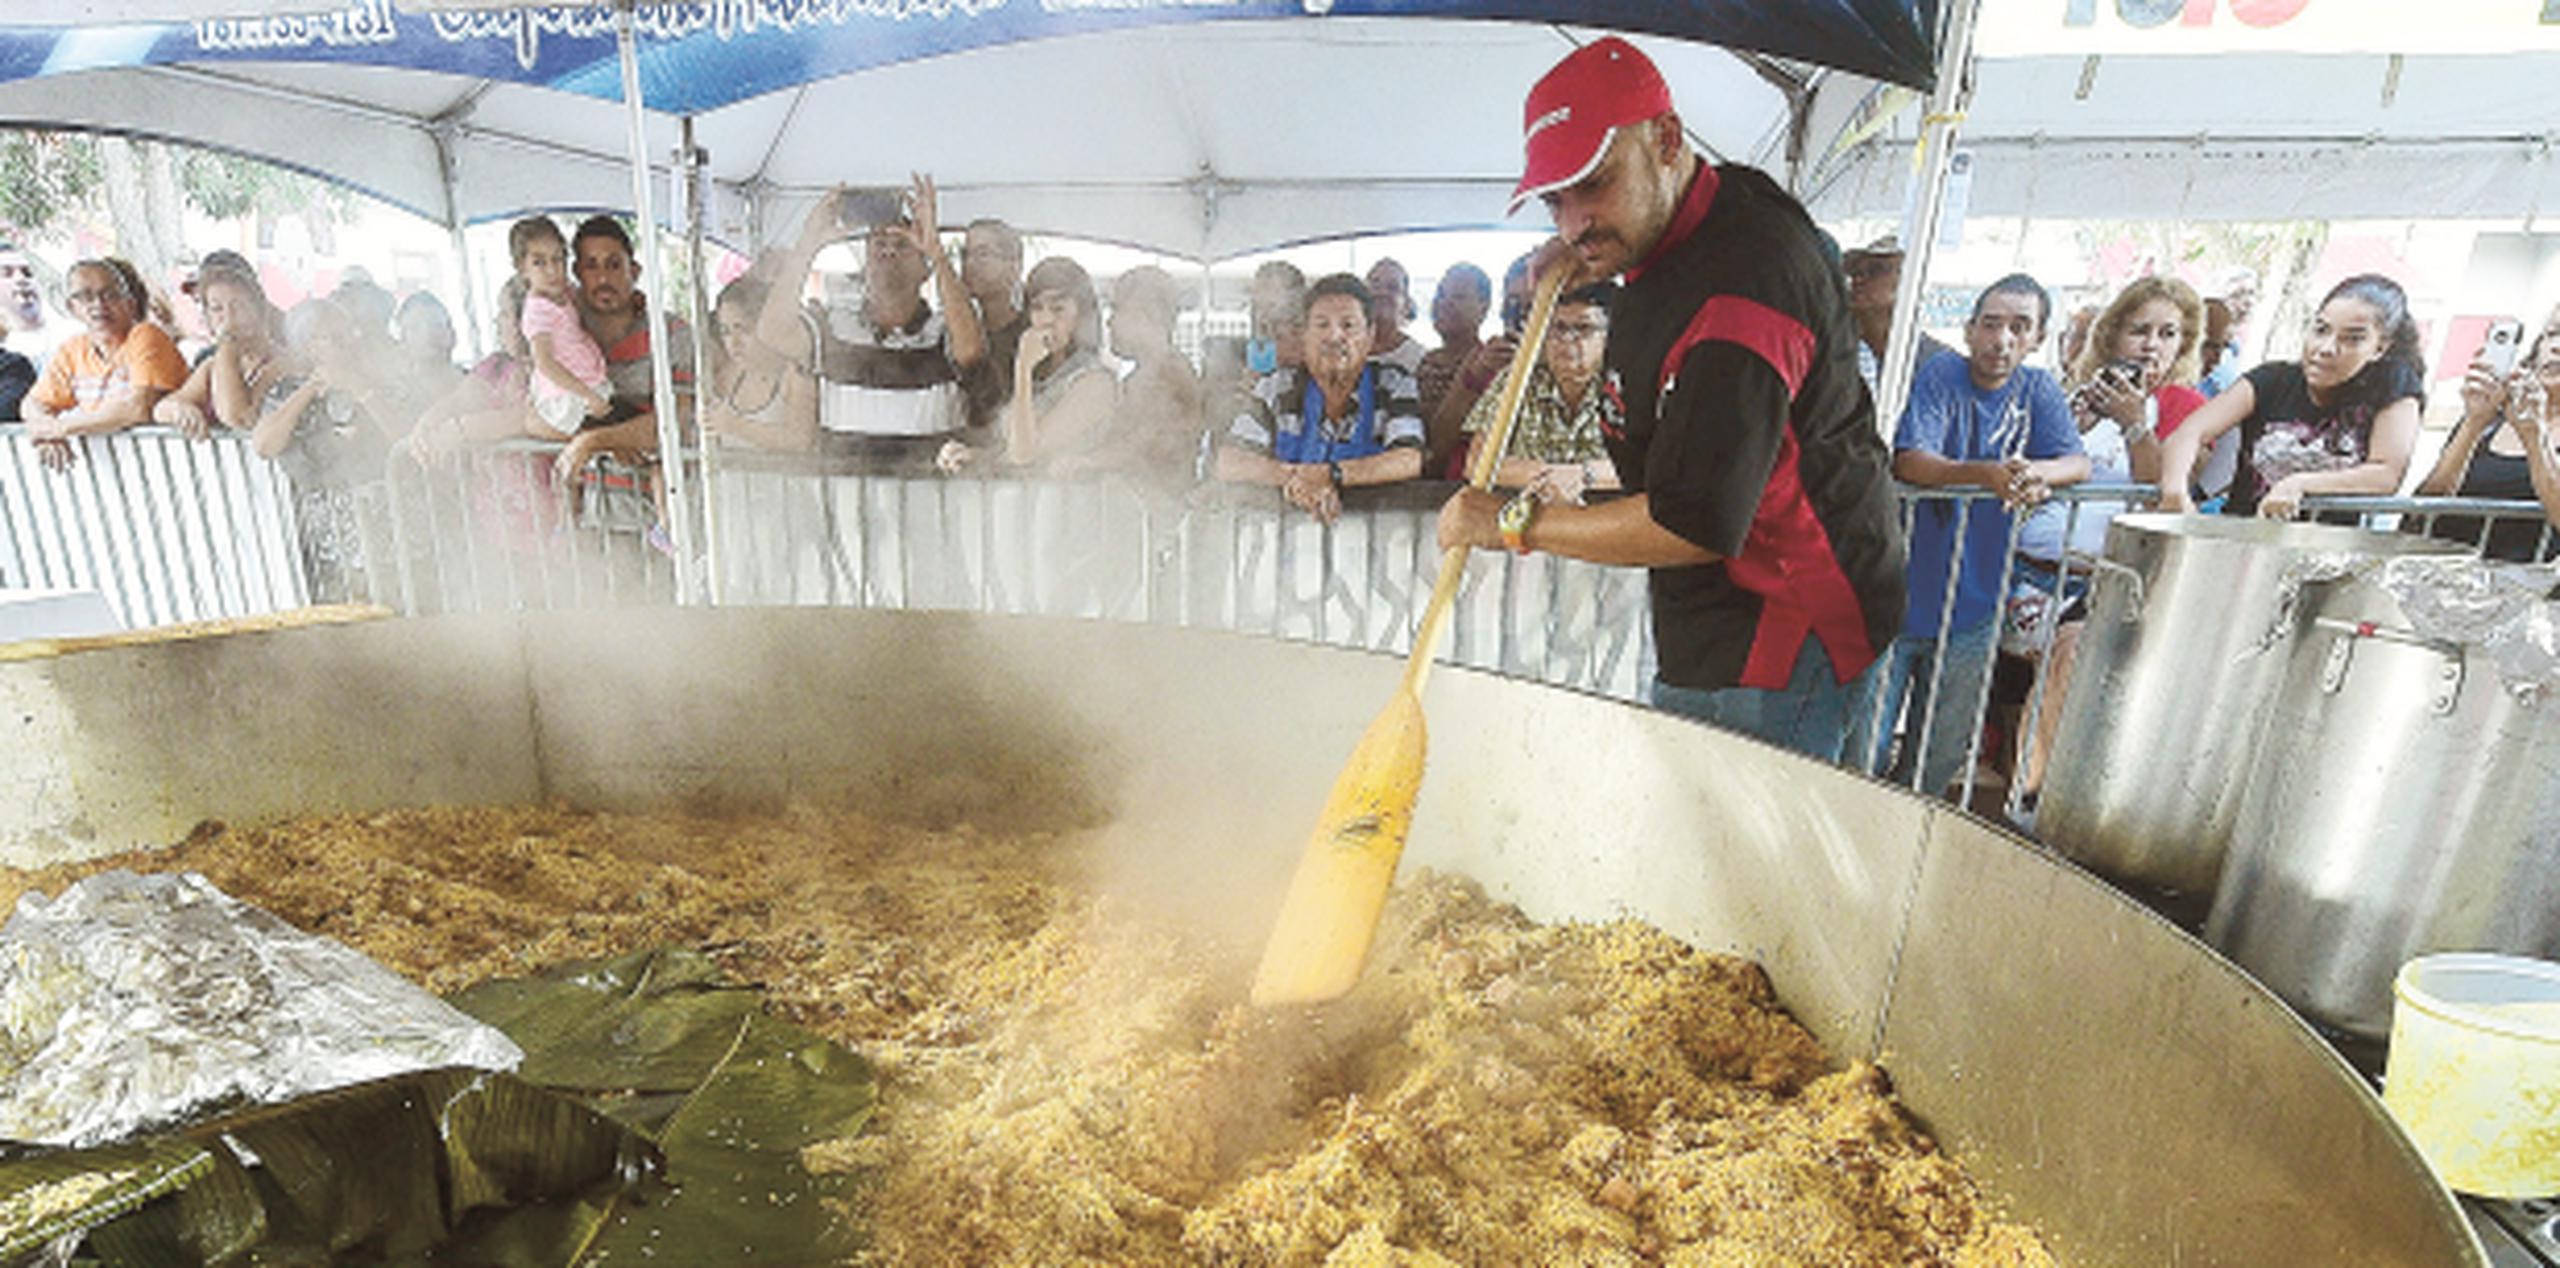 El domingo, 1,500 personas podrán tener la oportunidad de degustar el sabroso arroz con pollo confeccionado en la Olla Gigante. (tony.zayas@gfrmedia.com)